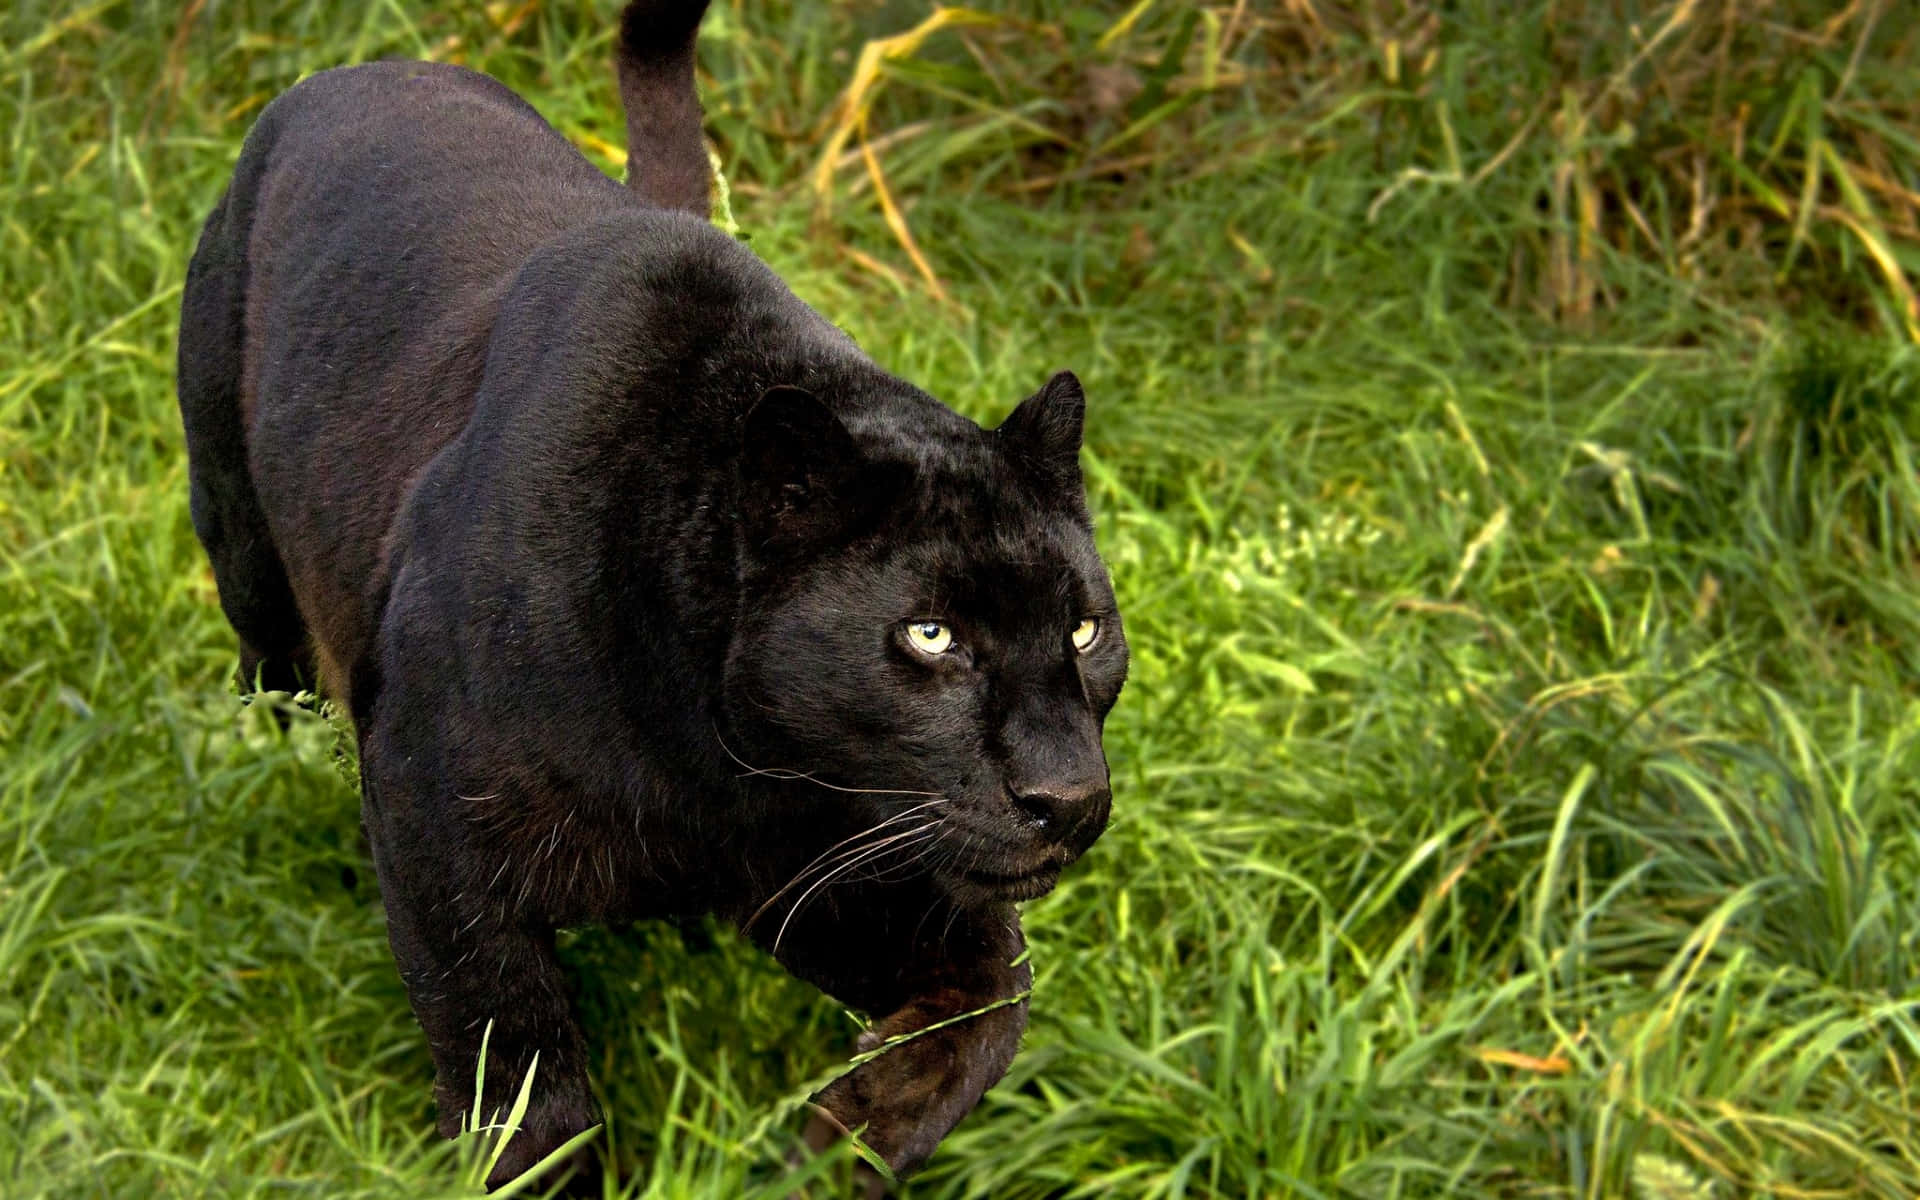 Umamajestosa Pantera Negra Está De Pé Sobre Uma Rocha Em Seu Habitat Natural. Papel de Parede